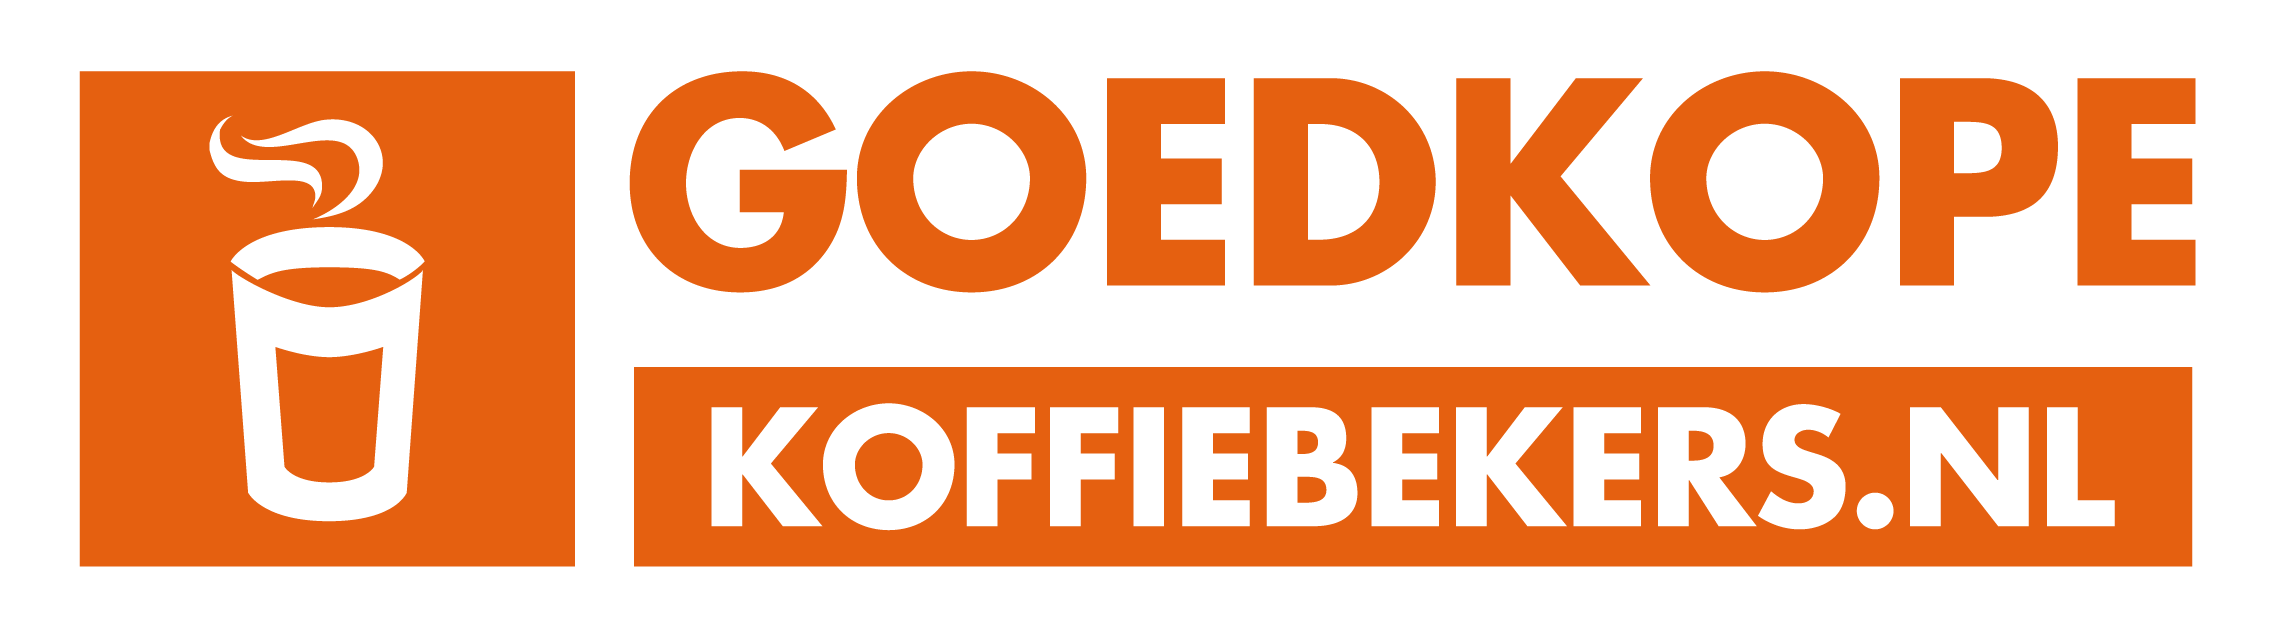 Leegte Perseus opladen Koffiebekers bestellen? Altijd gegarandeerd het laagste tarief! –  Goedkopekoffiebekers.nl